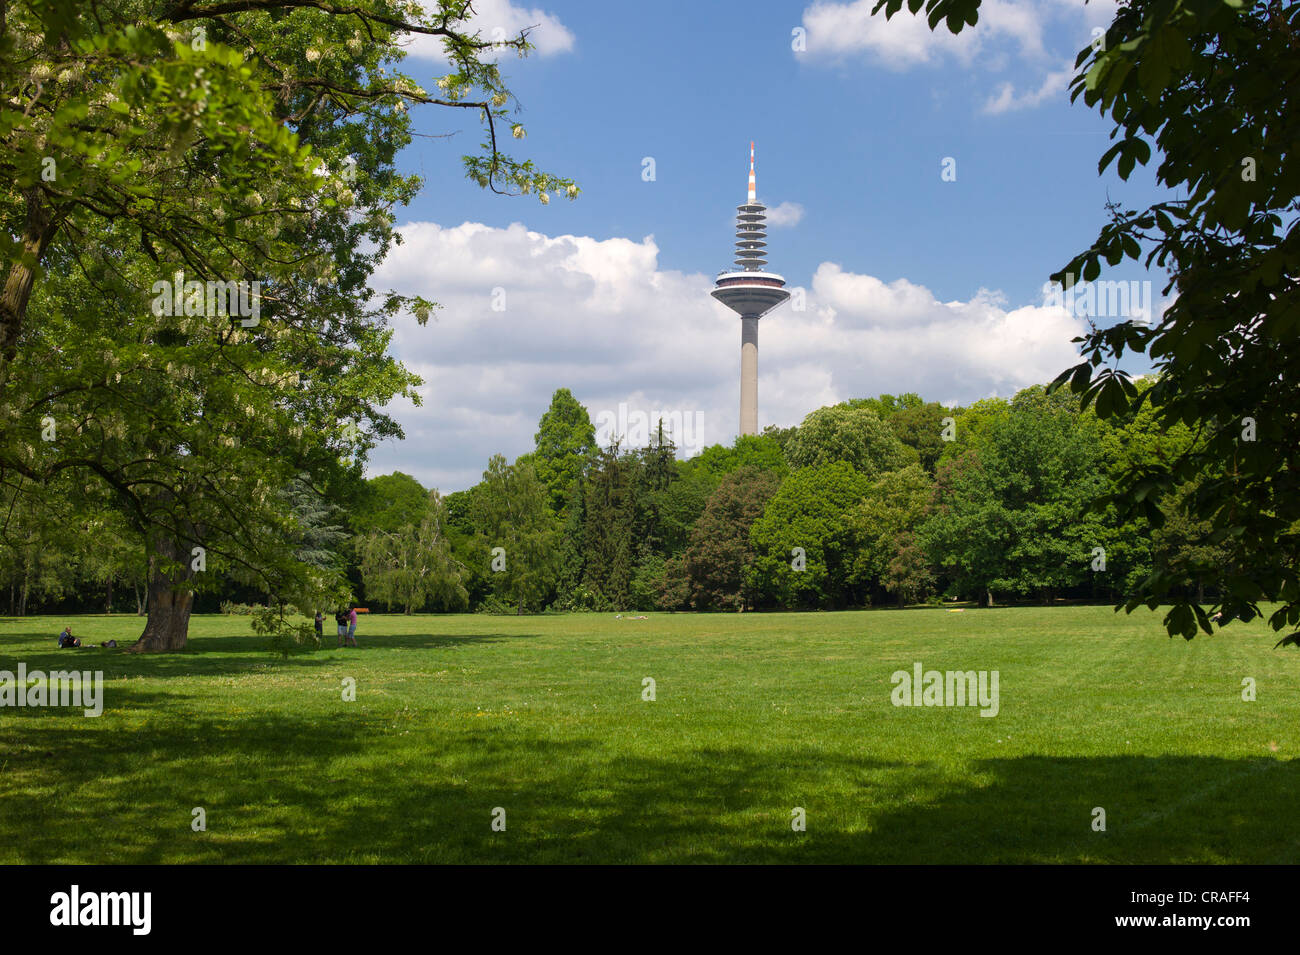 Grueneburgpark Gärten, Turm Europaturm Telekommunikation auf der Rückseite, auch bekannt als Ginnheimer Spargel Tower, Frankfurter Stockfoto